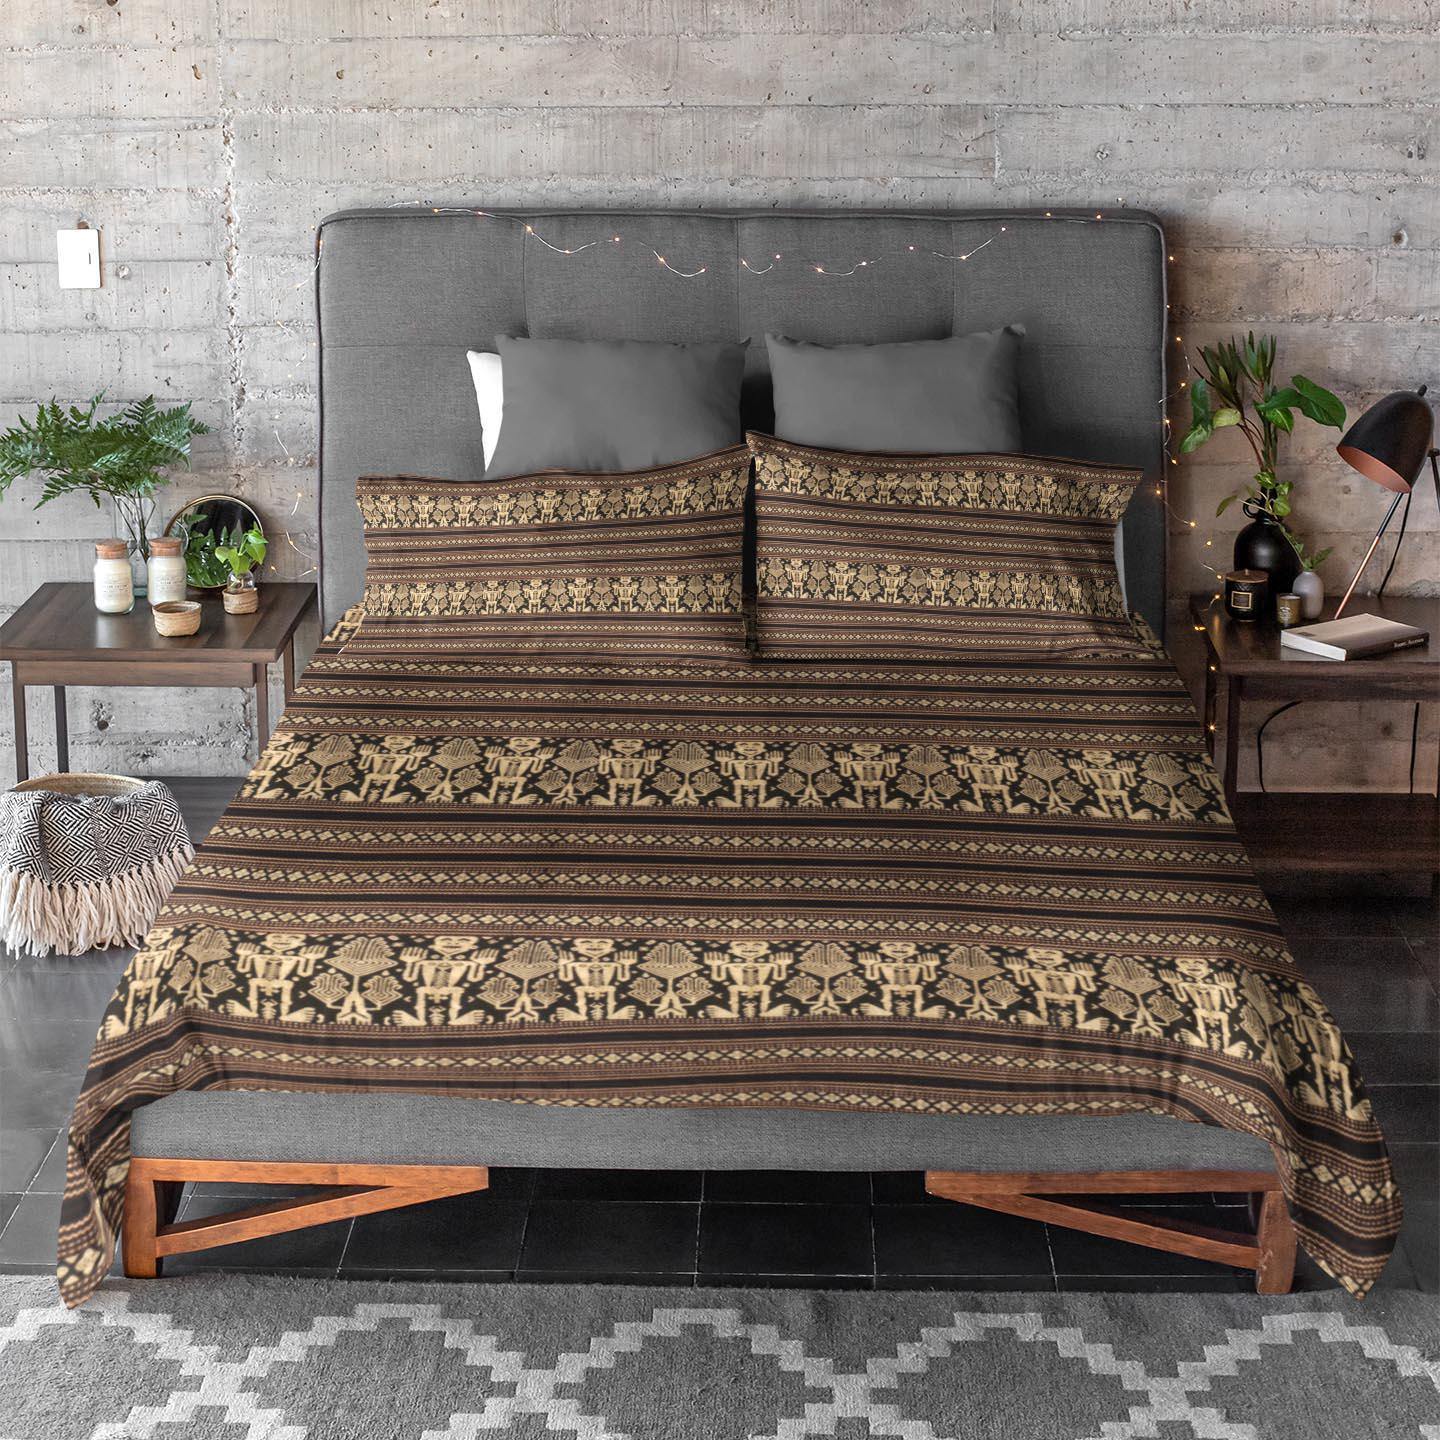 Bedding sets Bedding Set, Indonesian Ikat Traditional Design